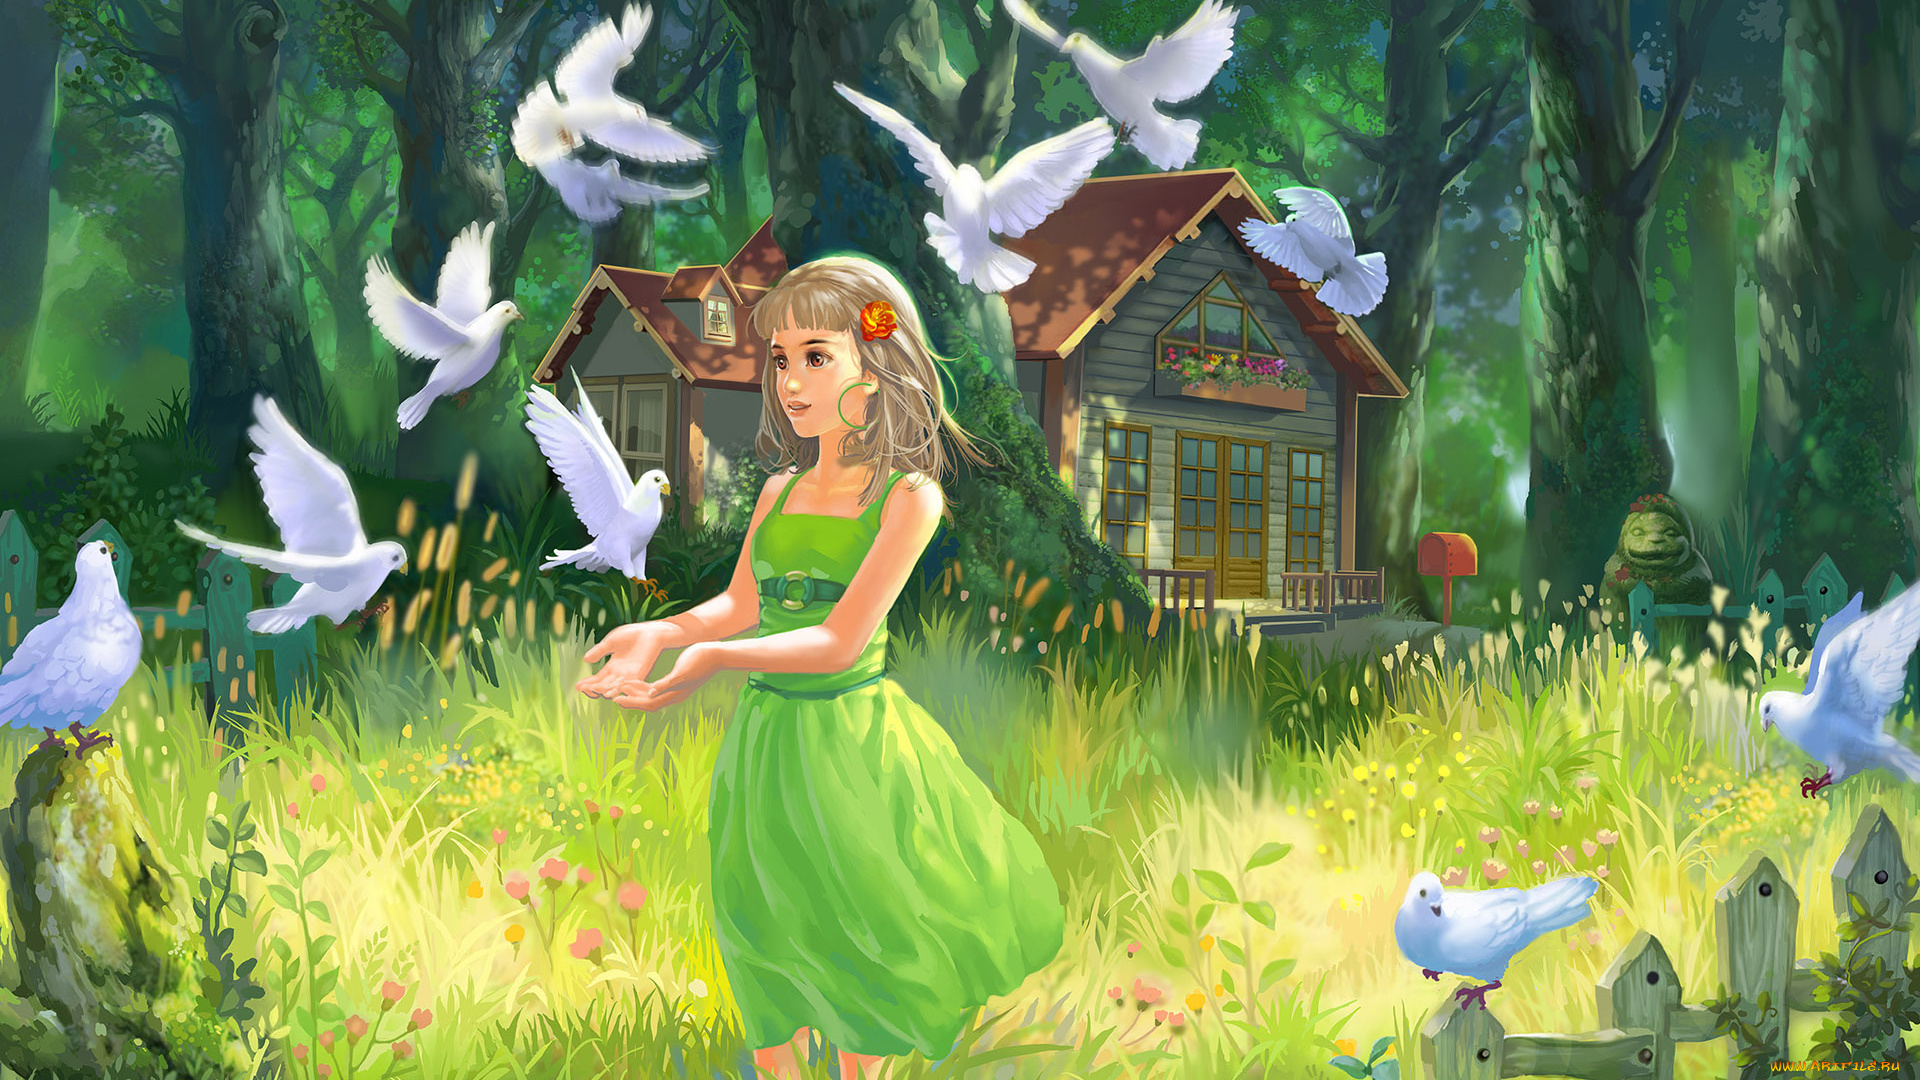 рисованные, дети, домик, голуби, девочка, нарисованно, деревья, травка